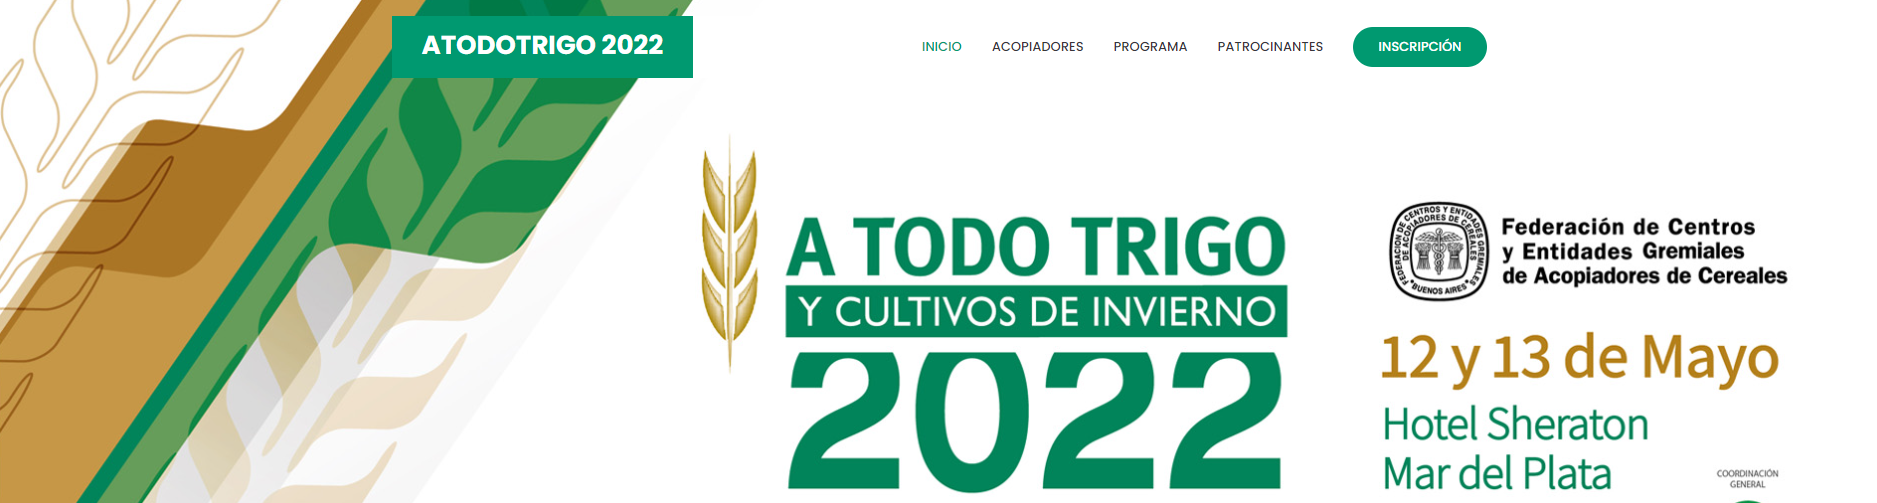 ATODOTRIGO 2022: Vuelve a realizarse el principal congreso de trigo del país y la región